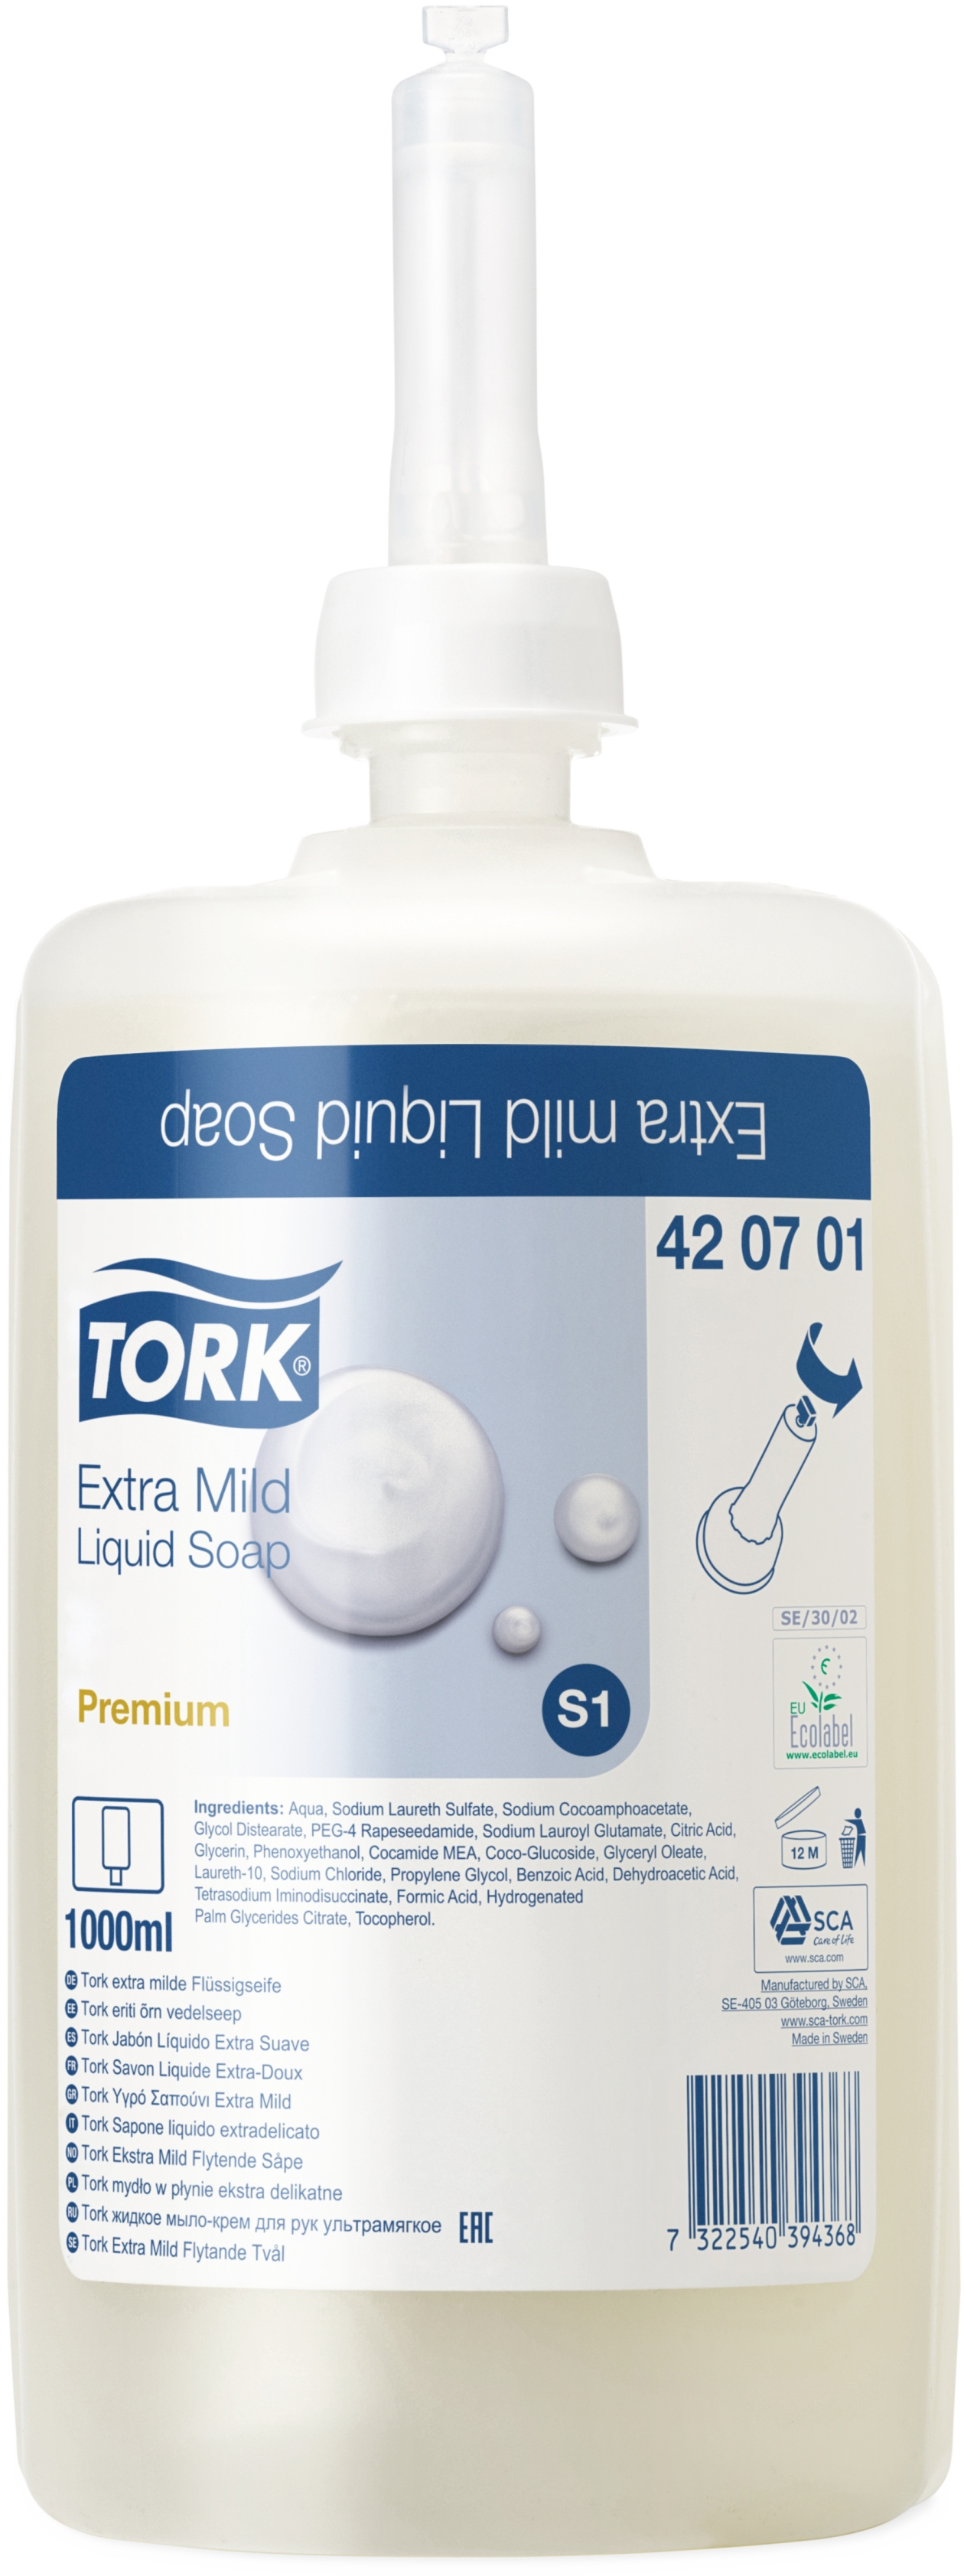 TORK Flüssigseife Premium S1 420701 unparfümiert 1l